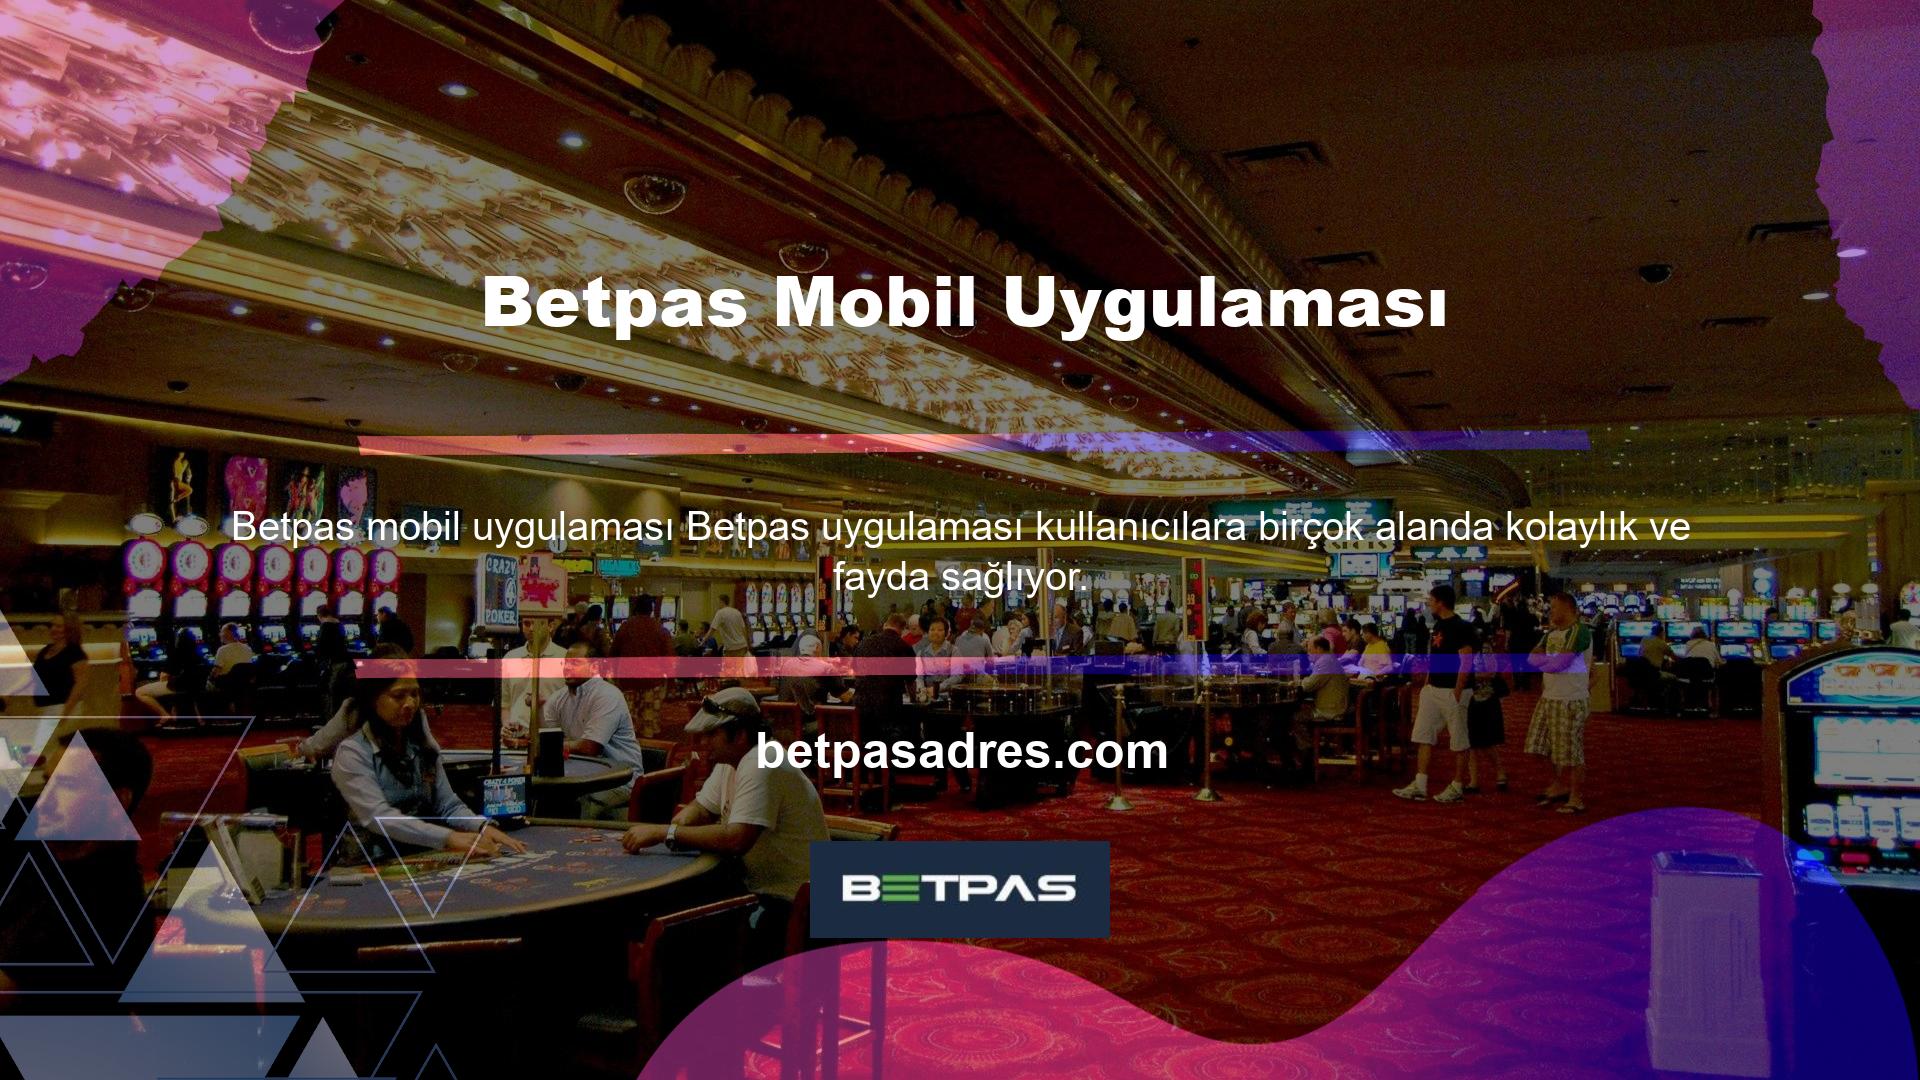 Betpas web sitesindeki en popüler içerik Betpas mobil uygulamasıdır